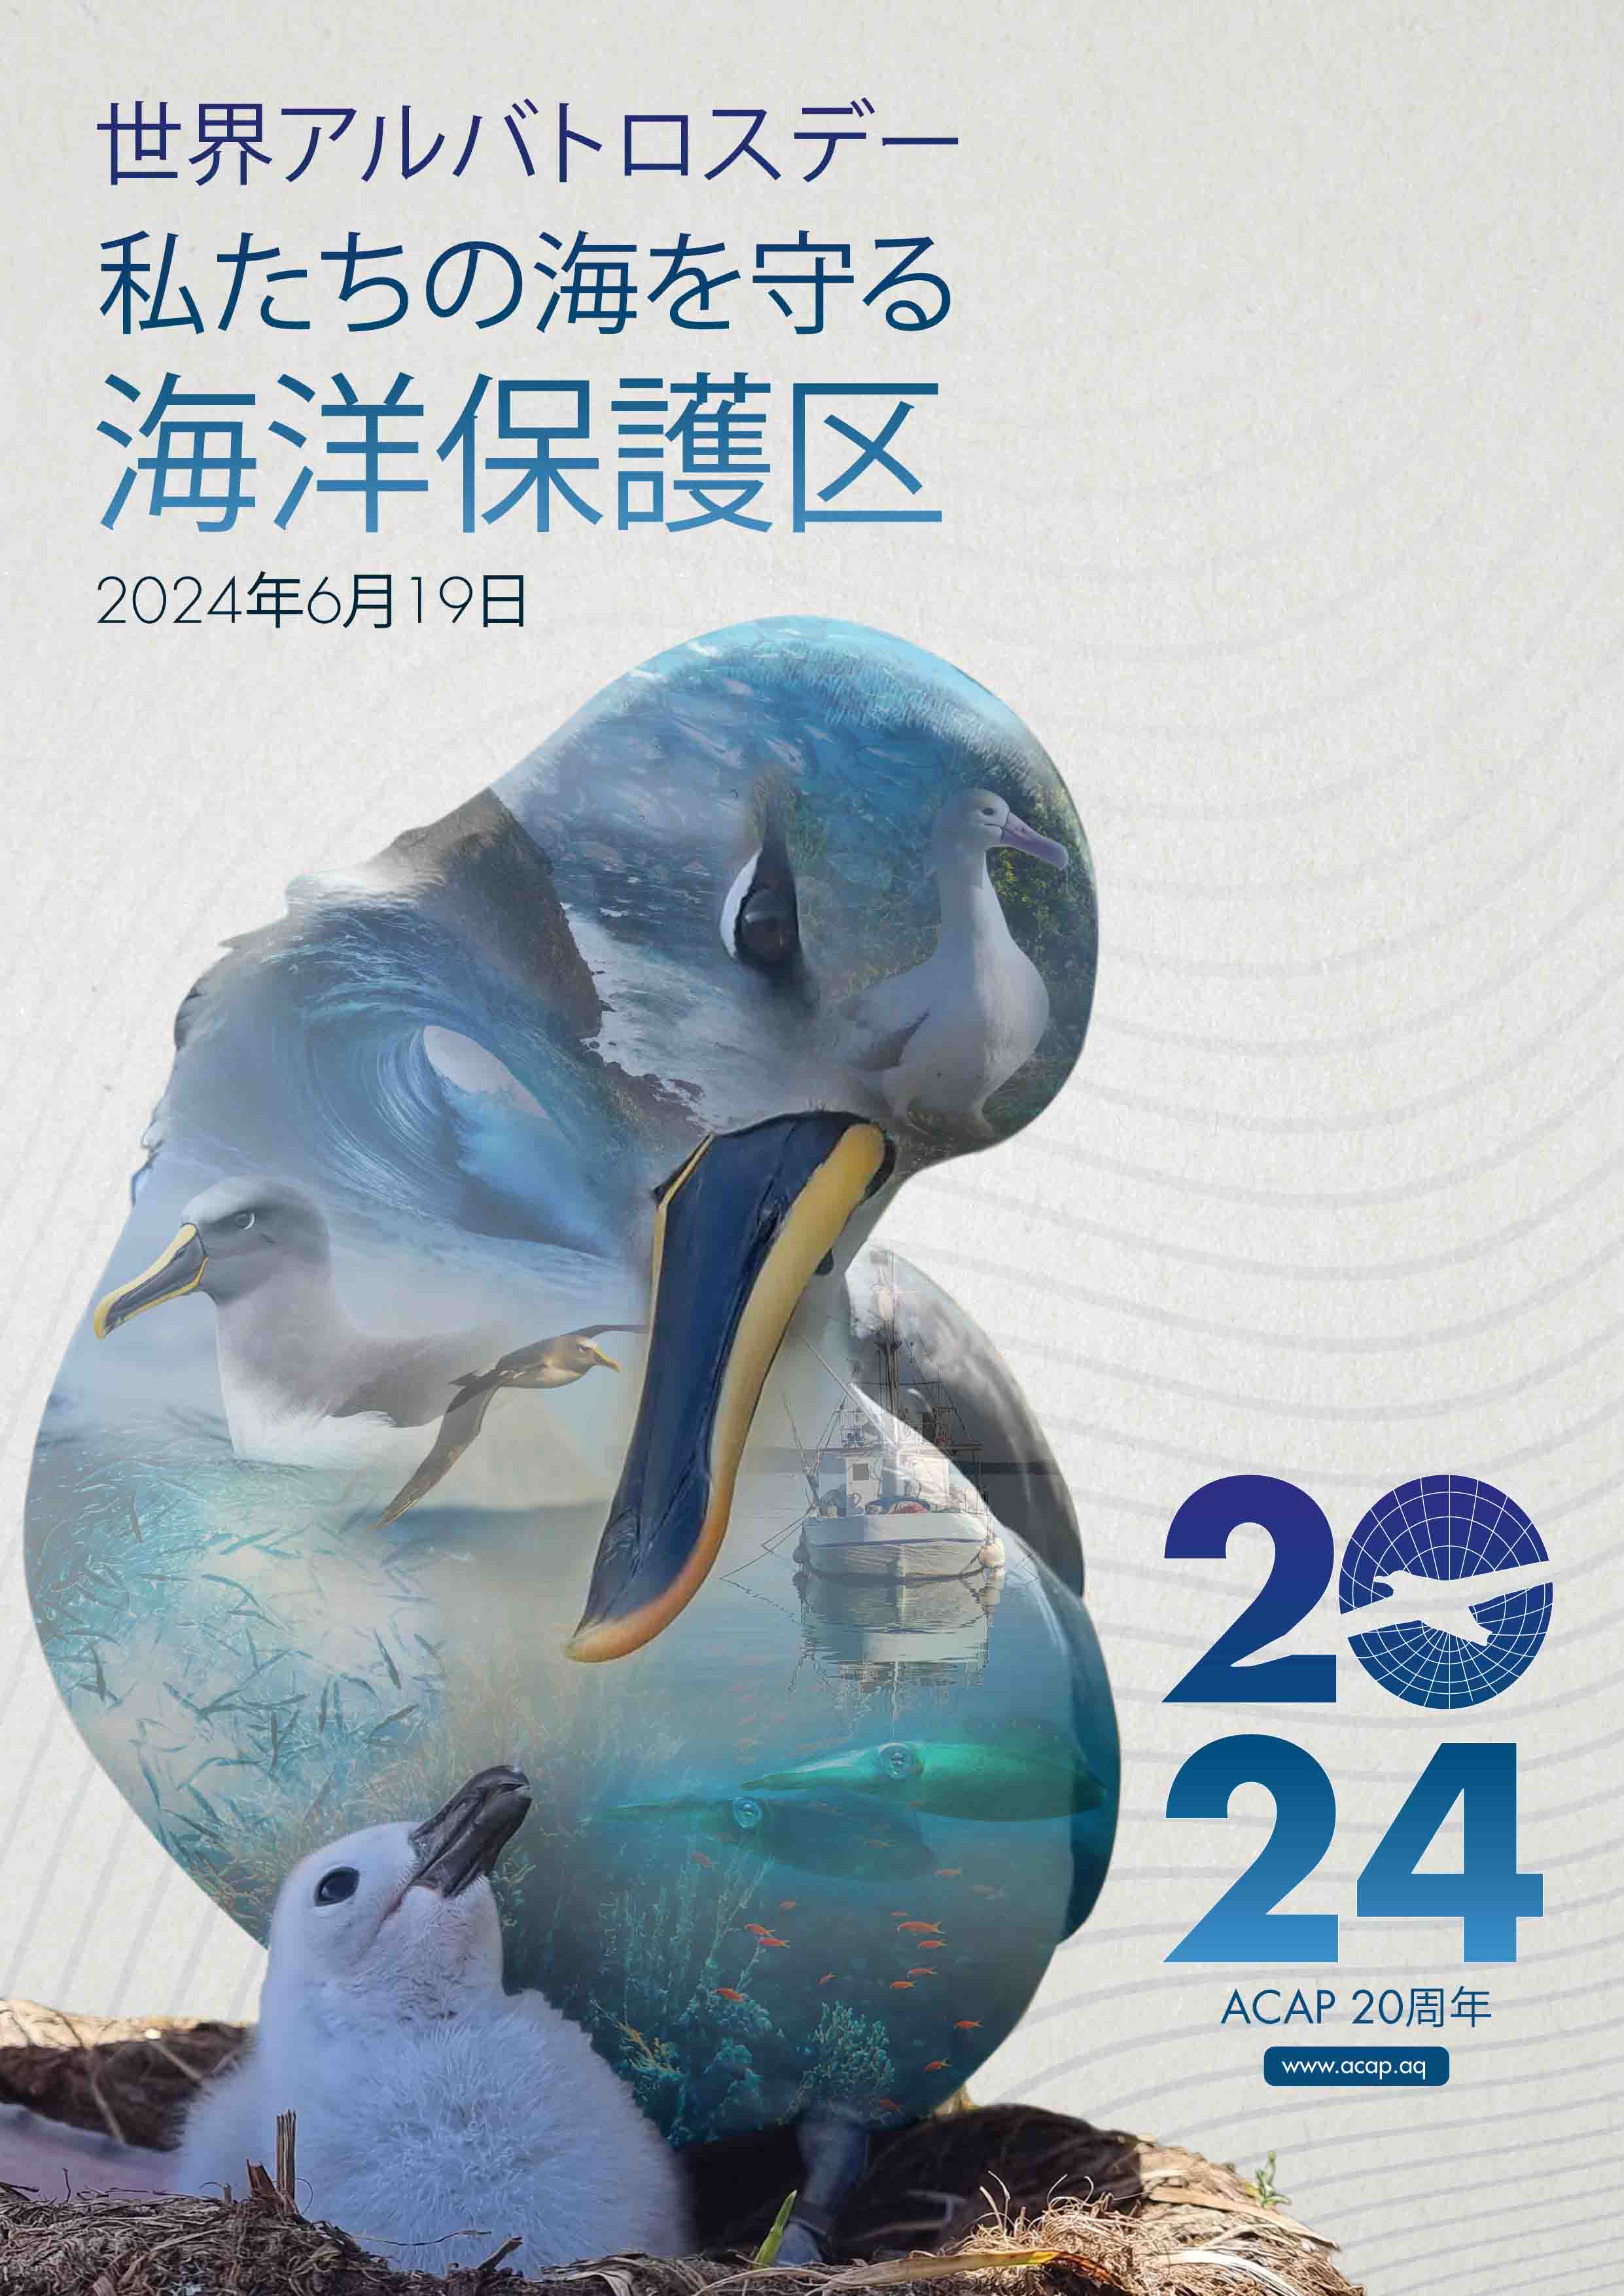 World Albatross Day 2024 Poster - Japanese